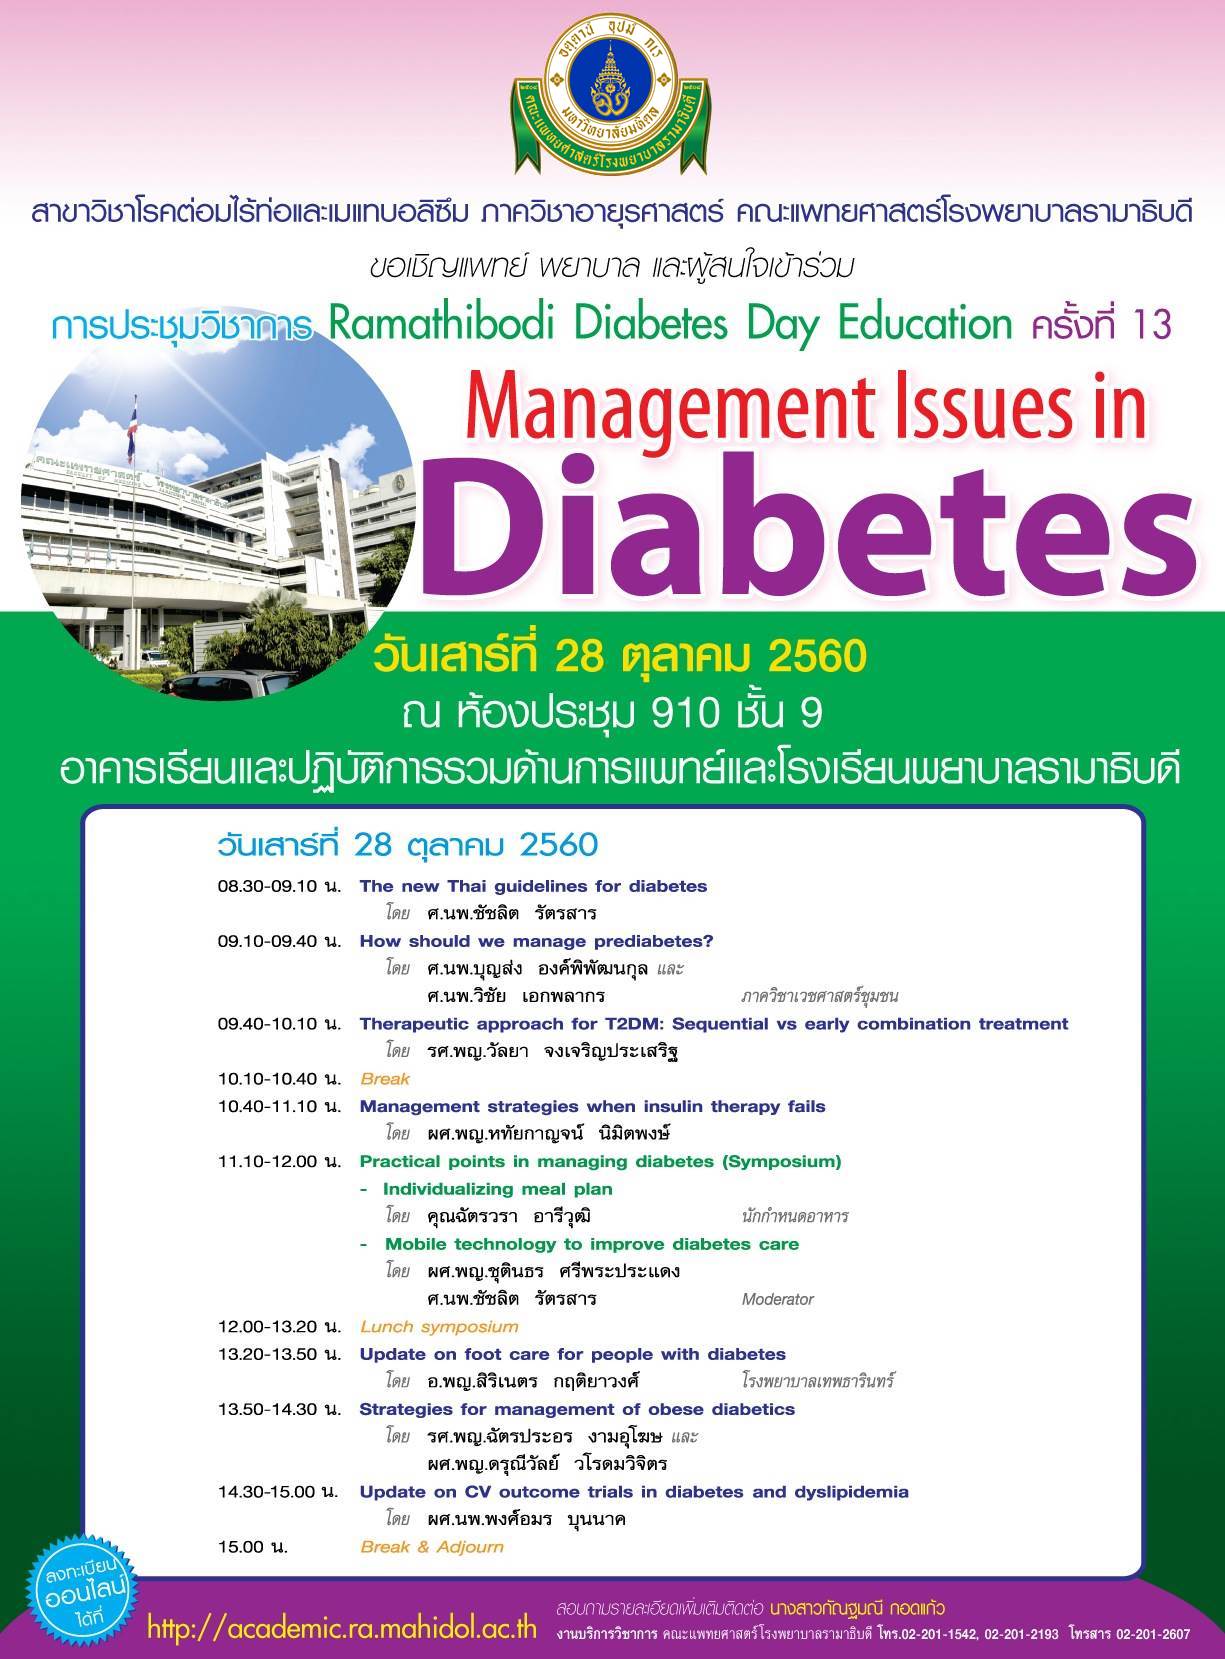 ประชุมวิชาการ Ramathibodi Diabetes Day Education 2017 ครั้งที่ 13 เรื่อง “Management Issues in Diabetes”